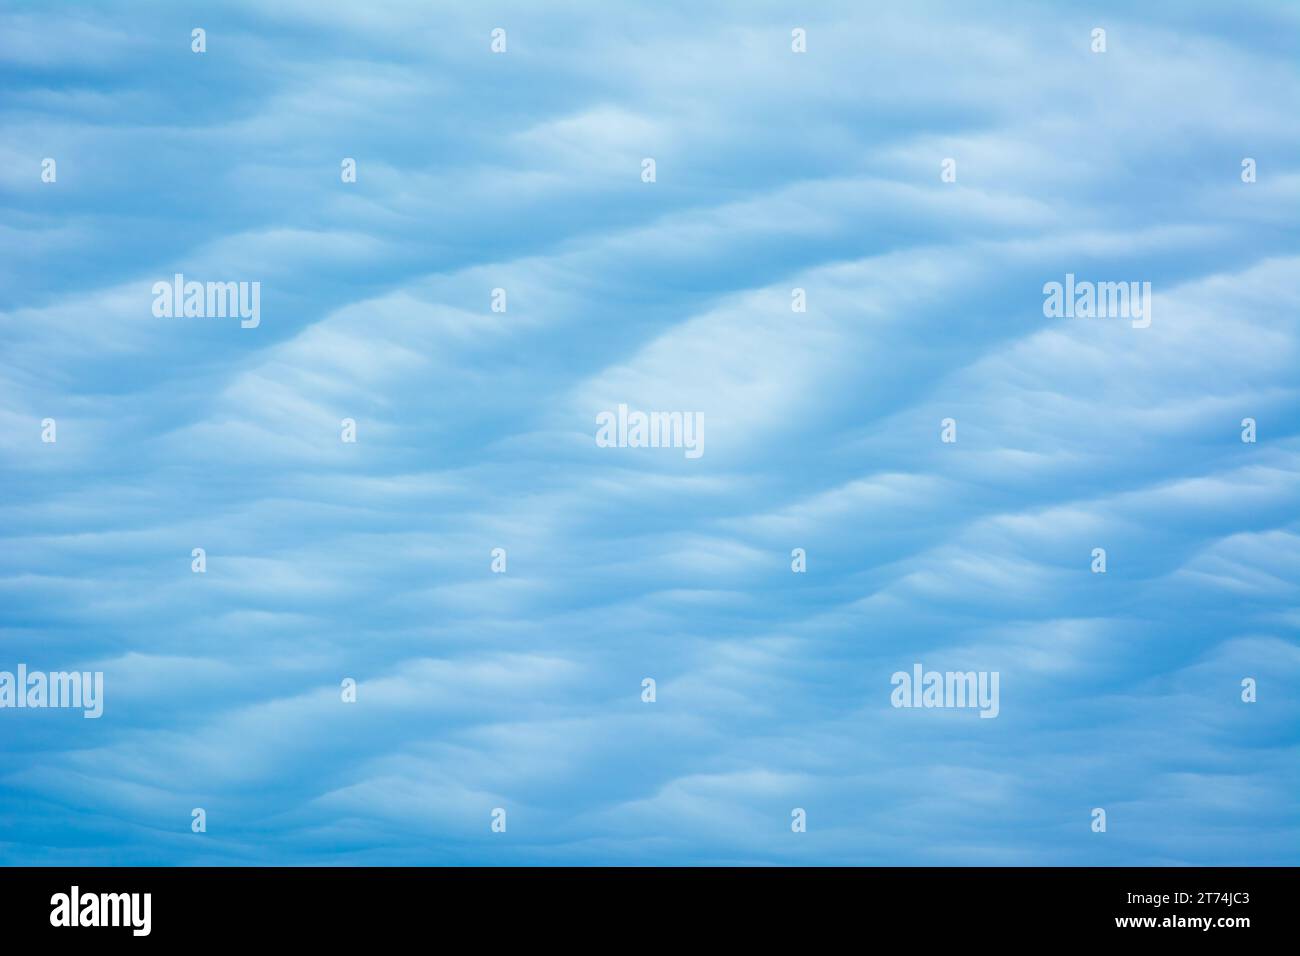 Texture nuvola blu astratta con motivo ondulato e dune. Foto Stock